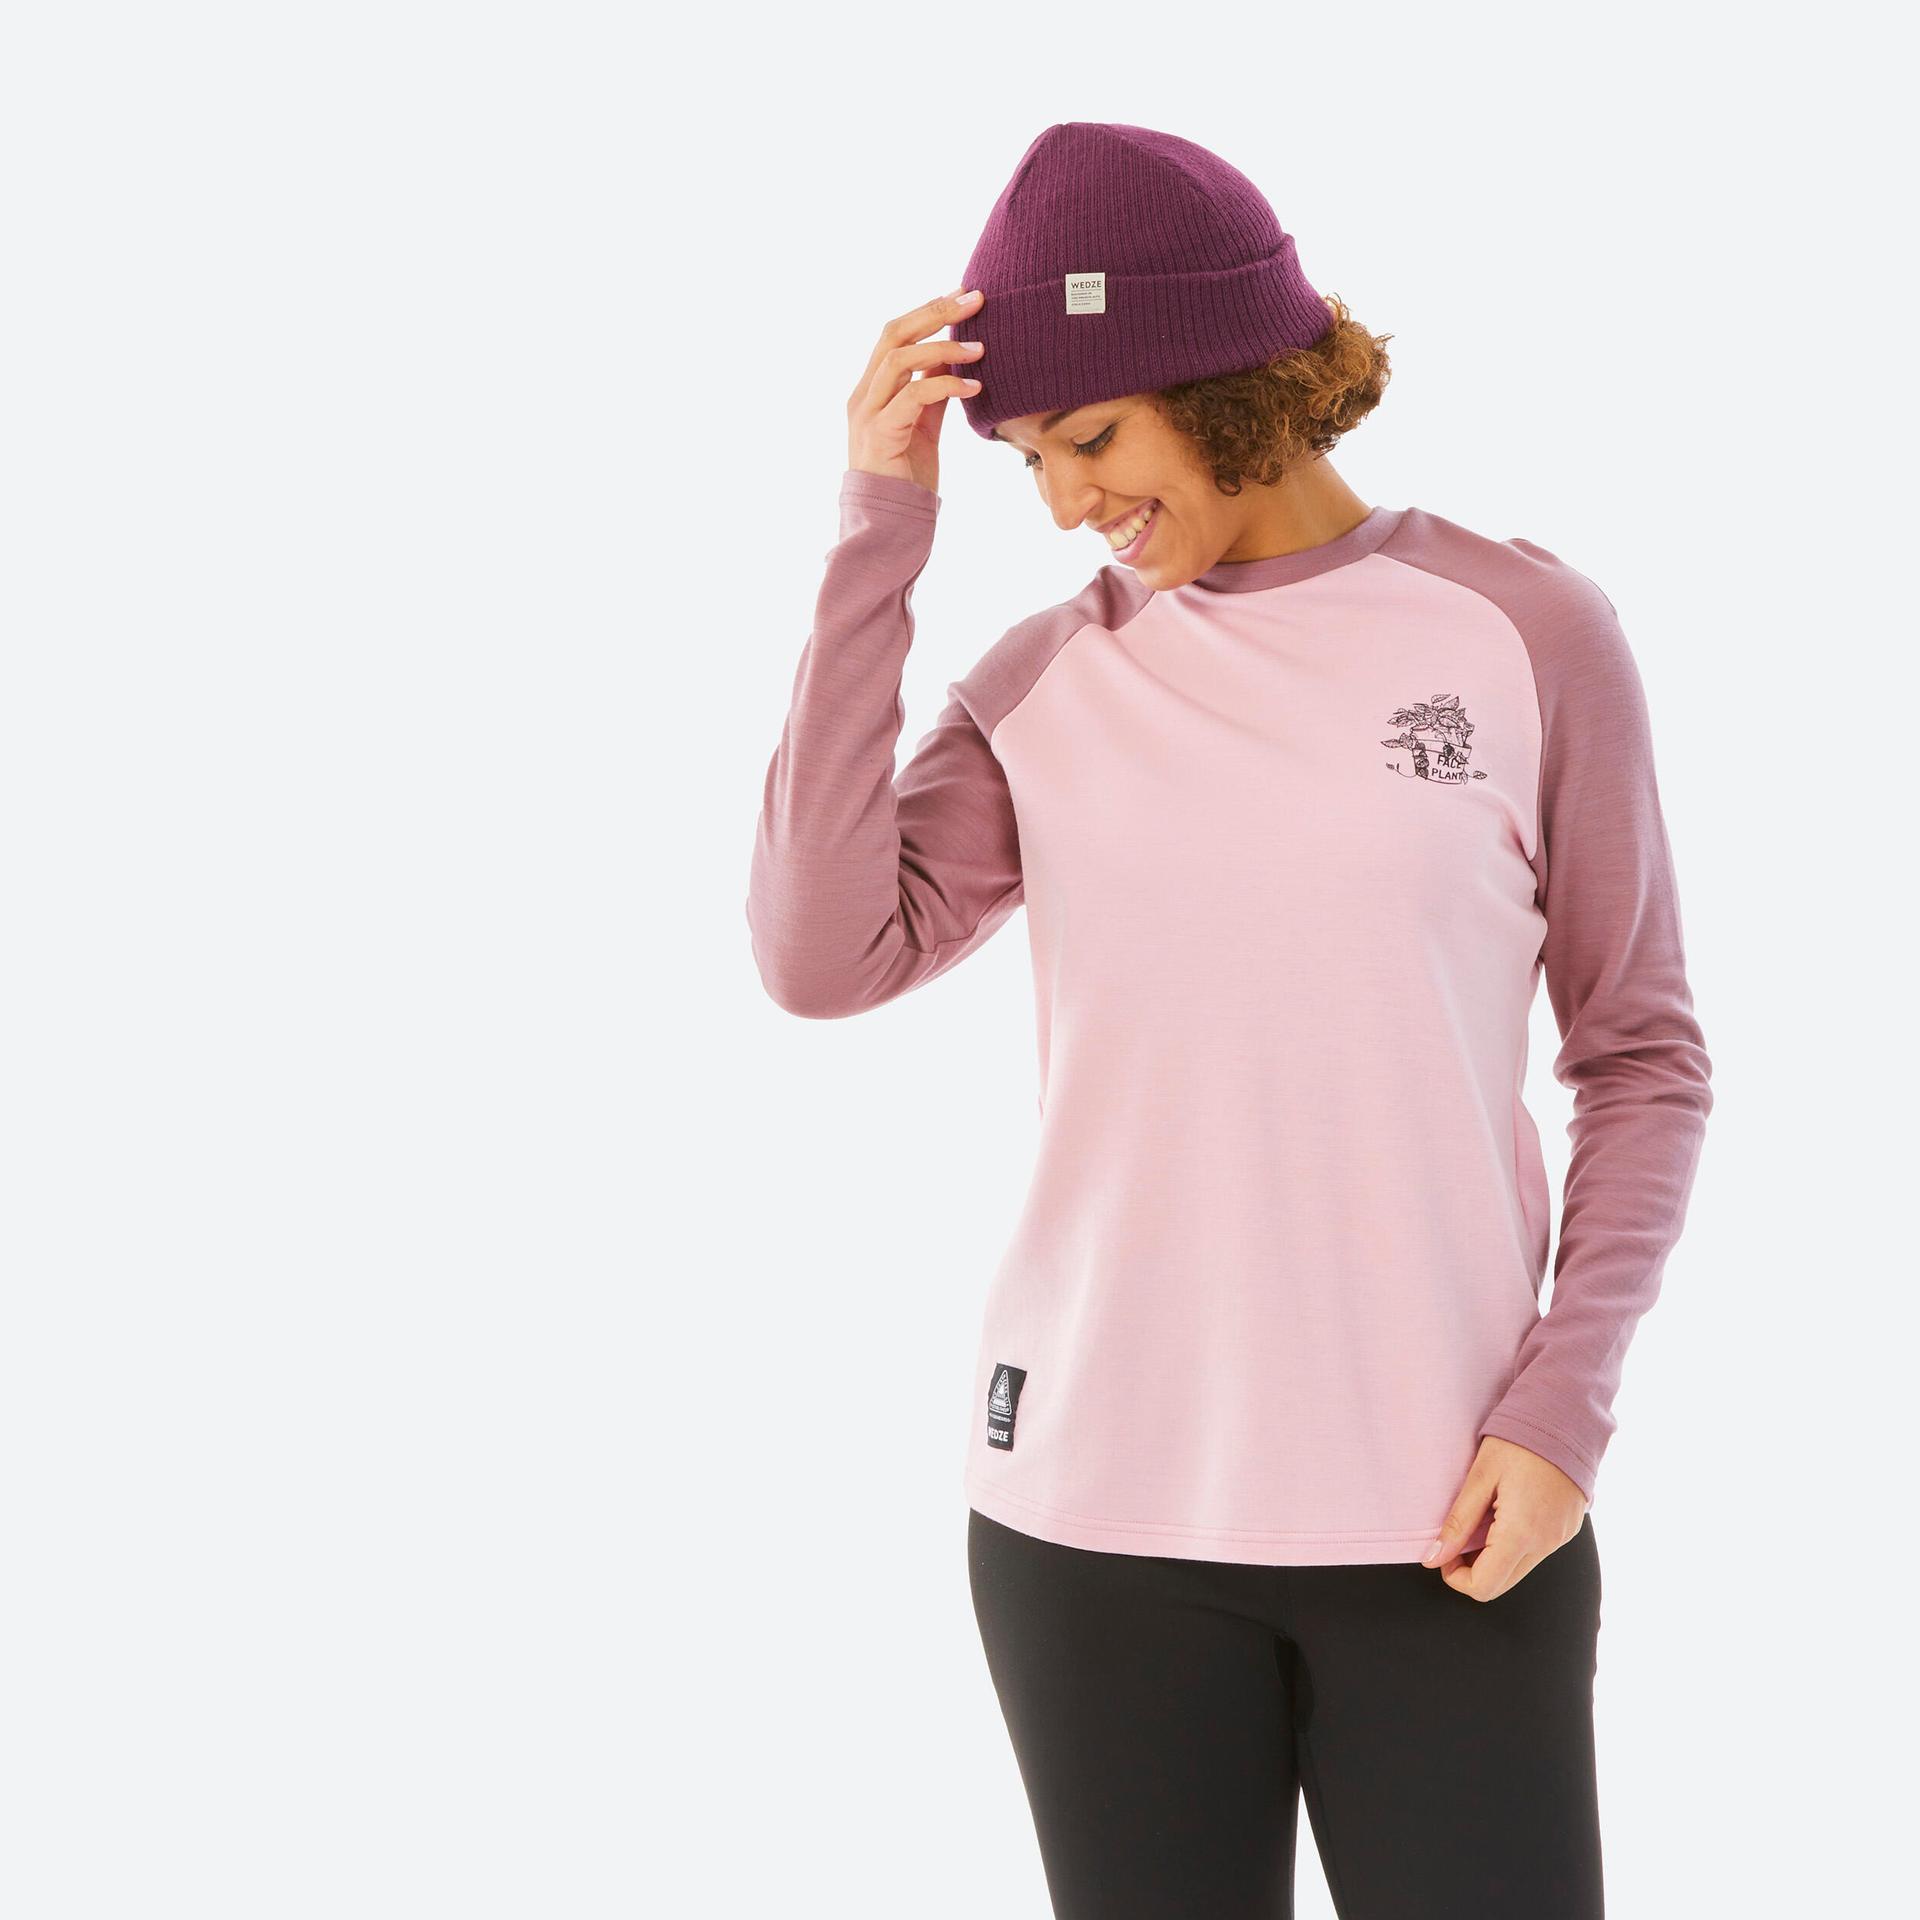 women's ski 590 base layer merino wool top - pink